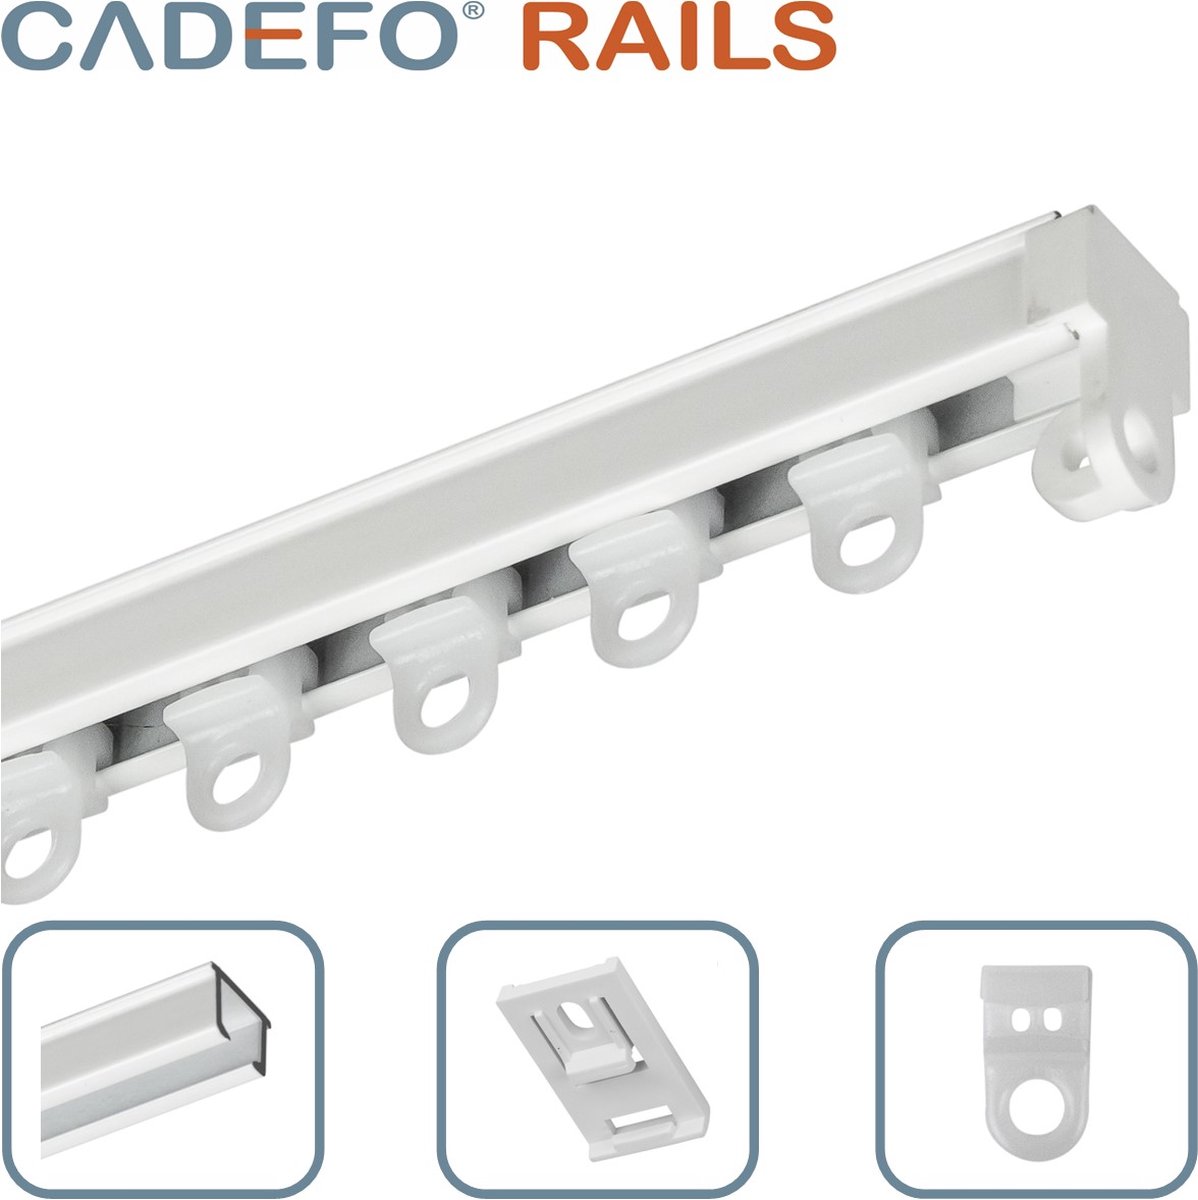 CADEFO RAILS (401 - 450 cm) Gordijnrails - Compleet op maat! - UIT 1 STUK - Leverbaar tot 6 meter - Plafondbevestiging - Lengte 406 cm